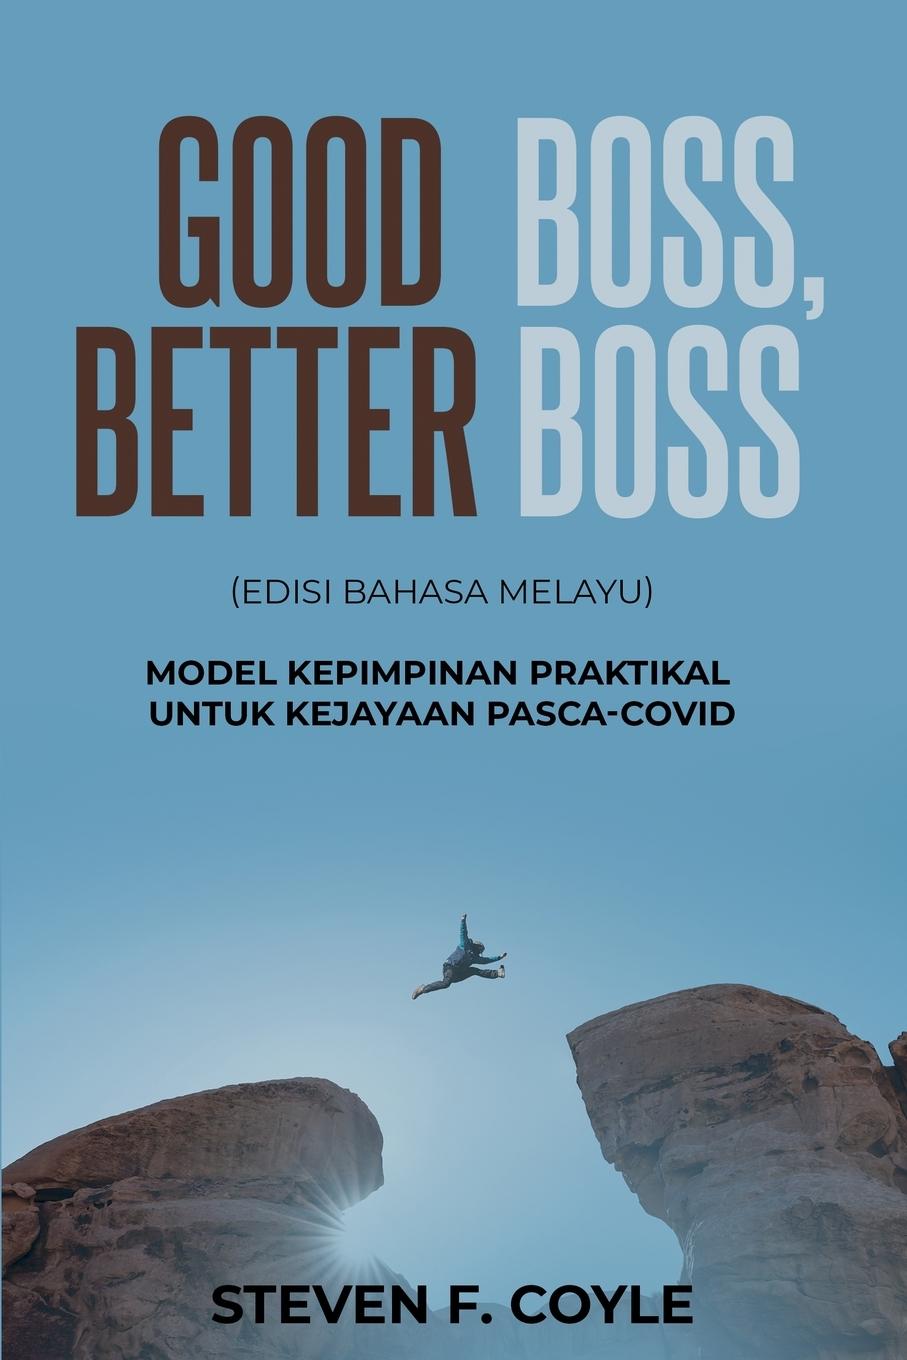 Book Good Boss, Better Boss Augustine Chay